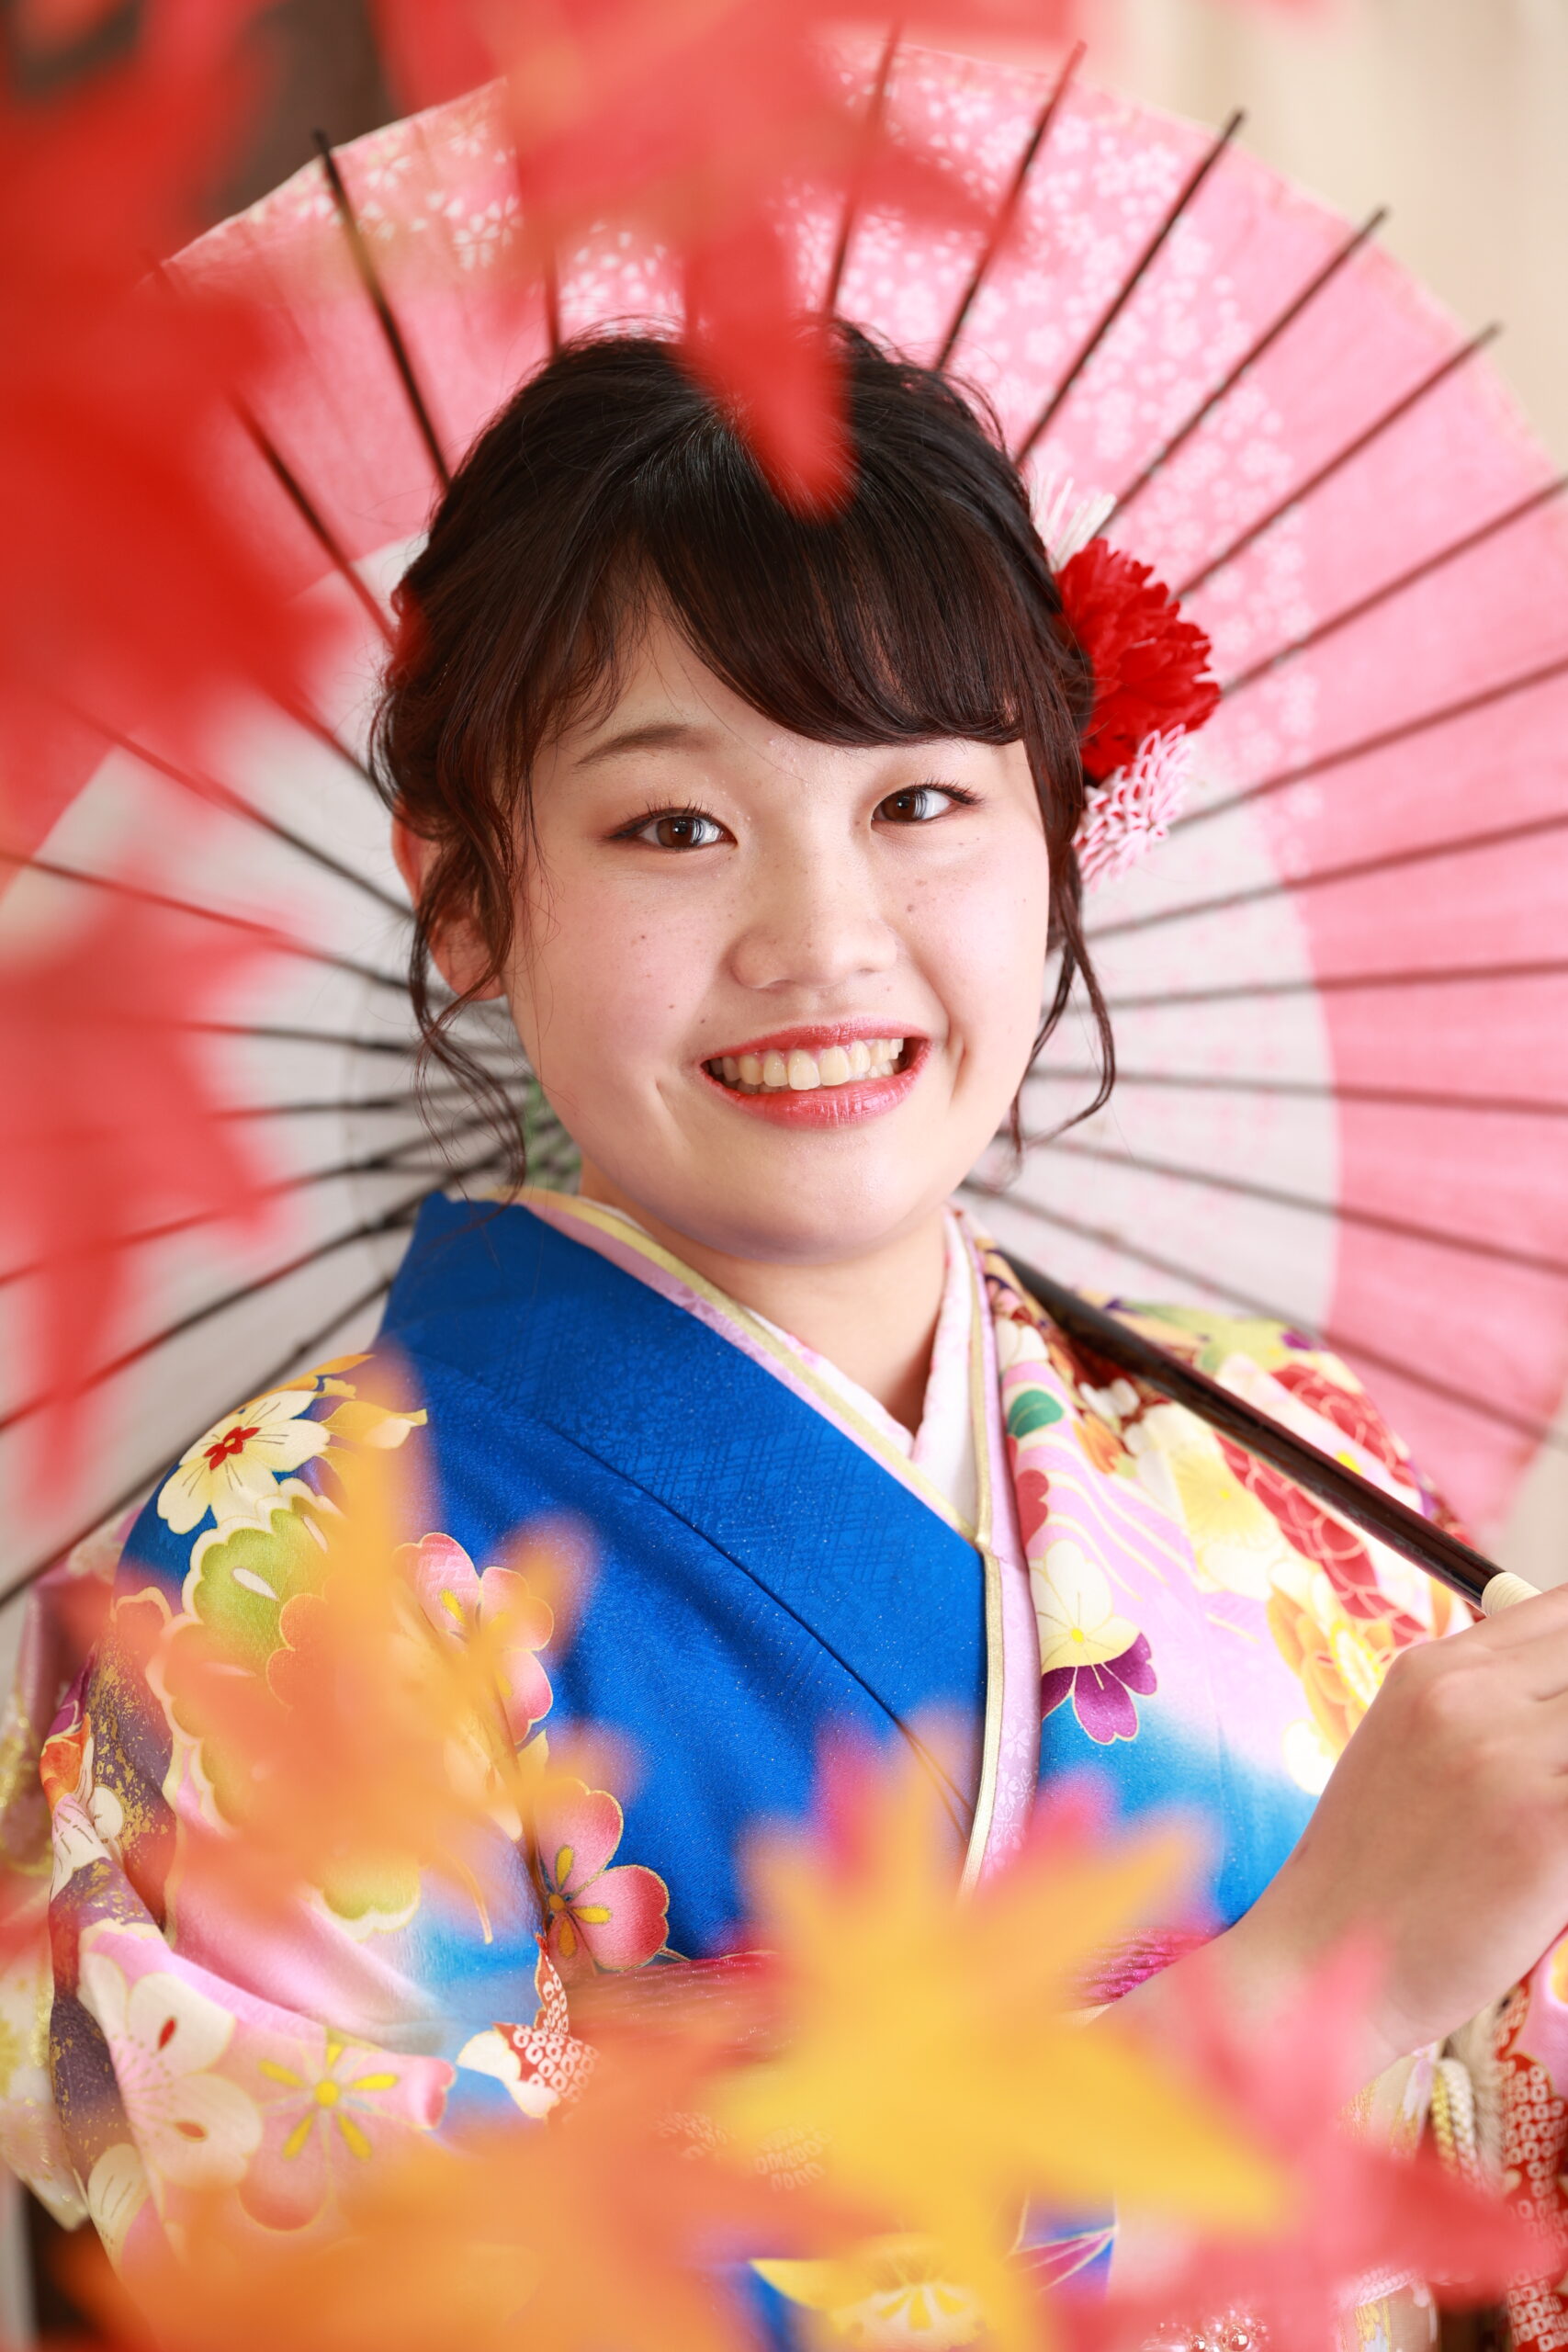 和傘をさした写真は、伝統的な雰囲気♪